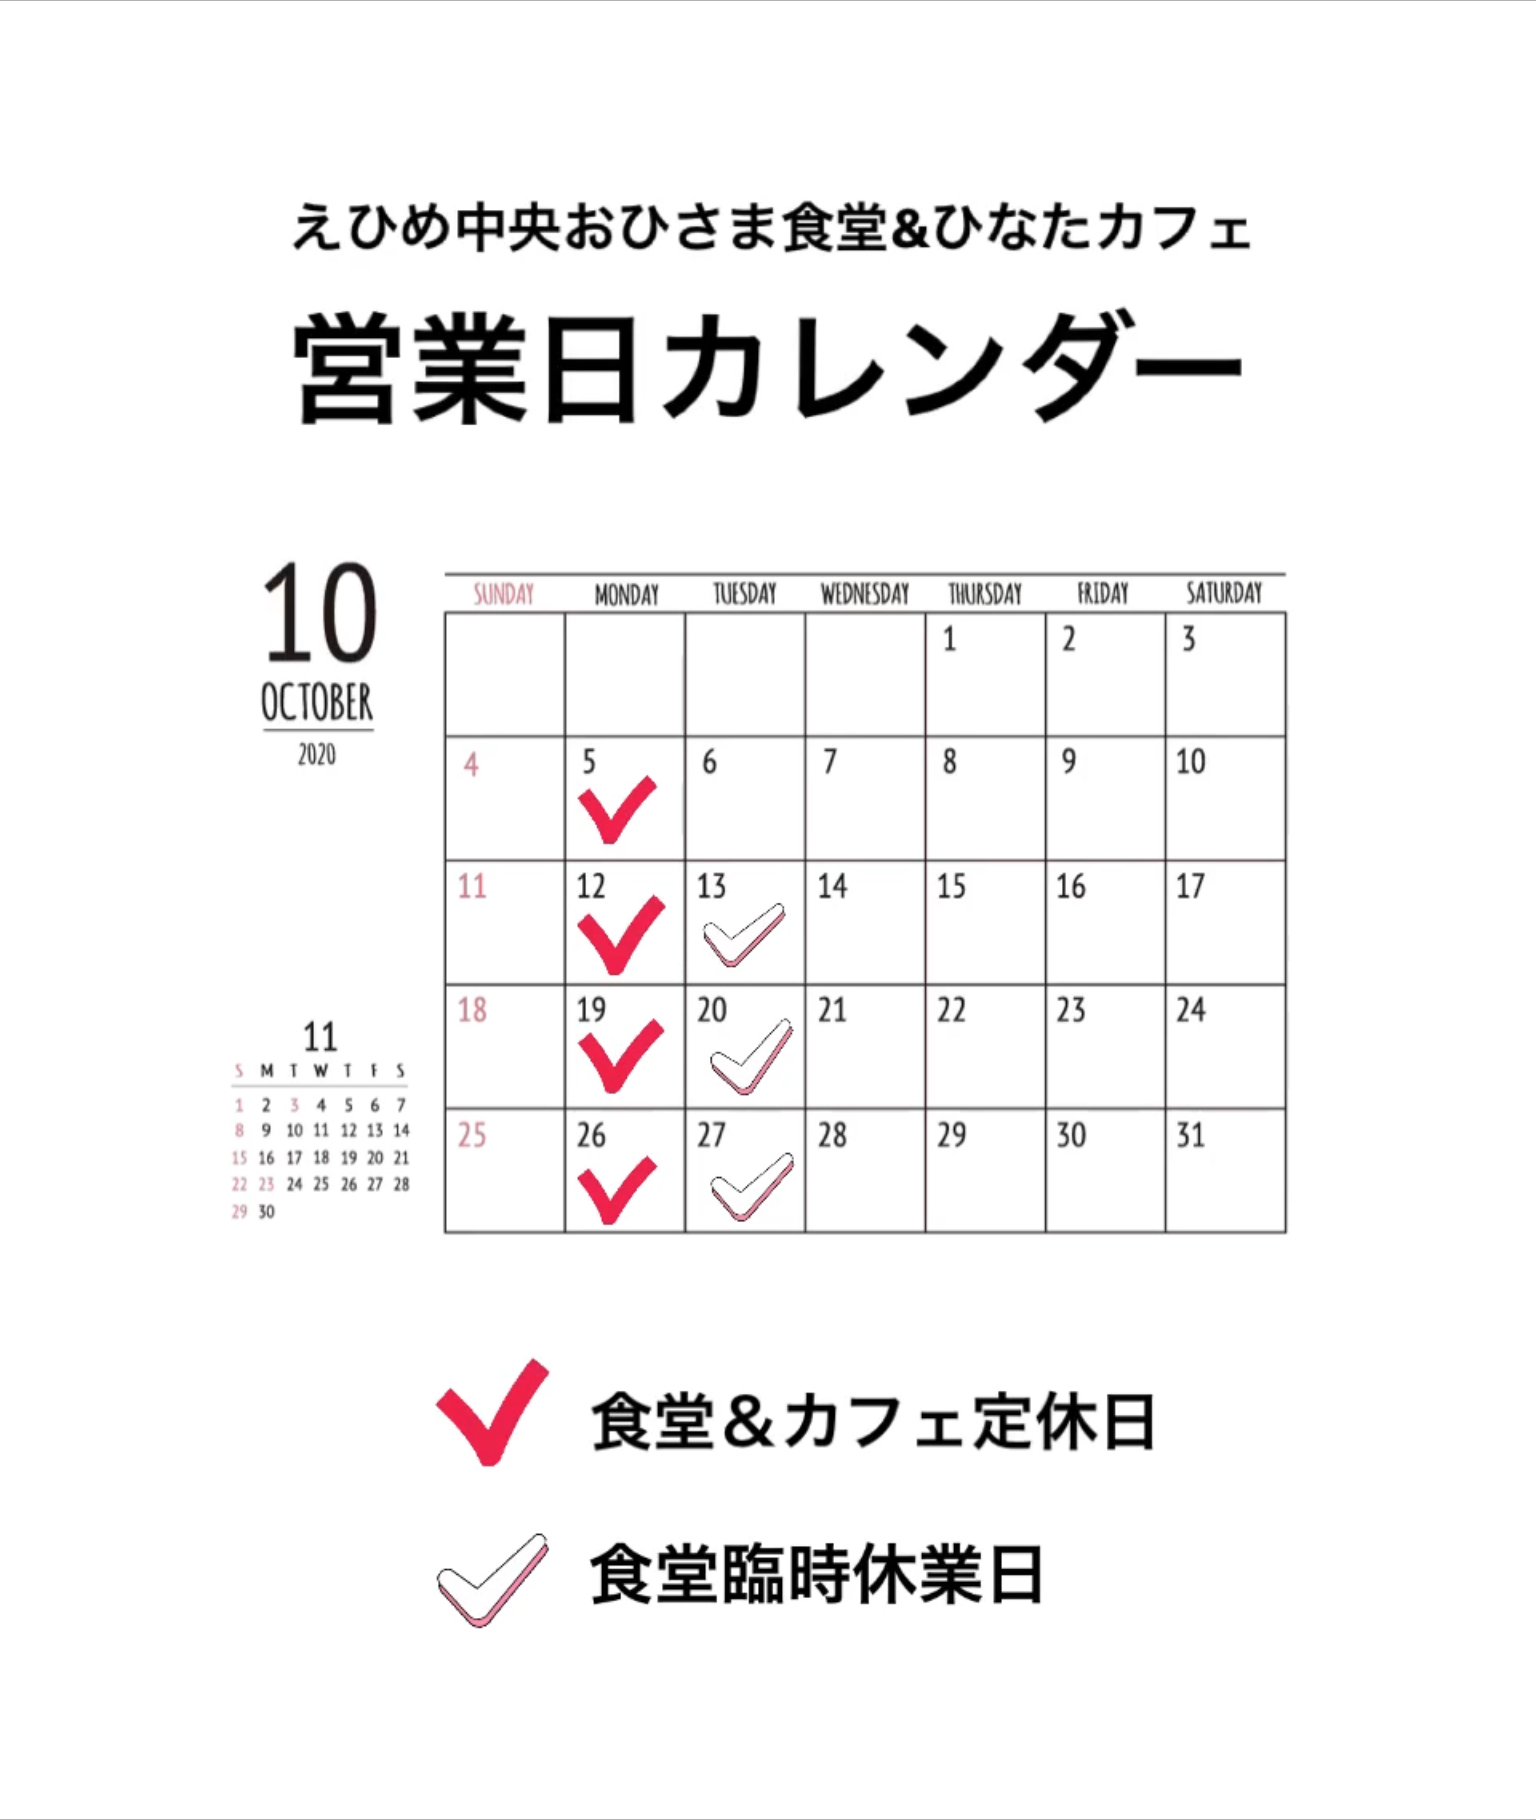 食堂 カフェ 10月の営業日カレンダー Jaえひめ中央 えひめ中央農業協同組合